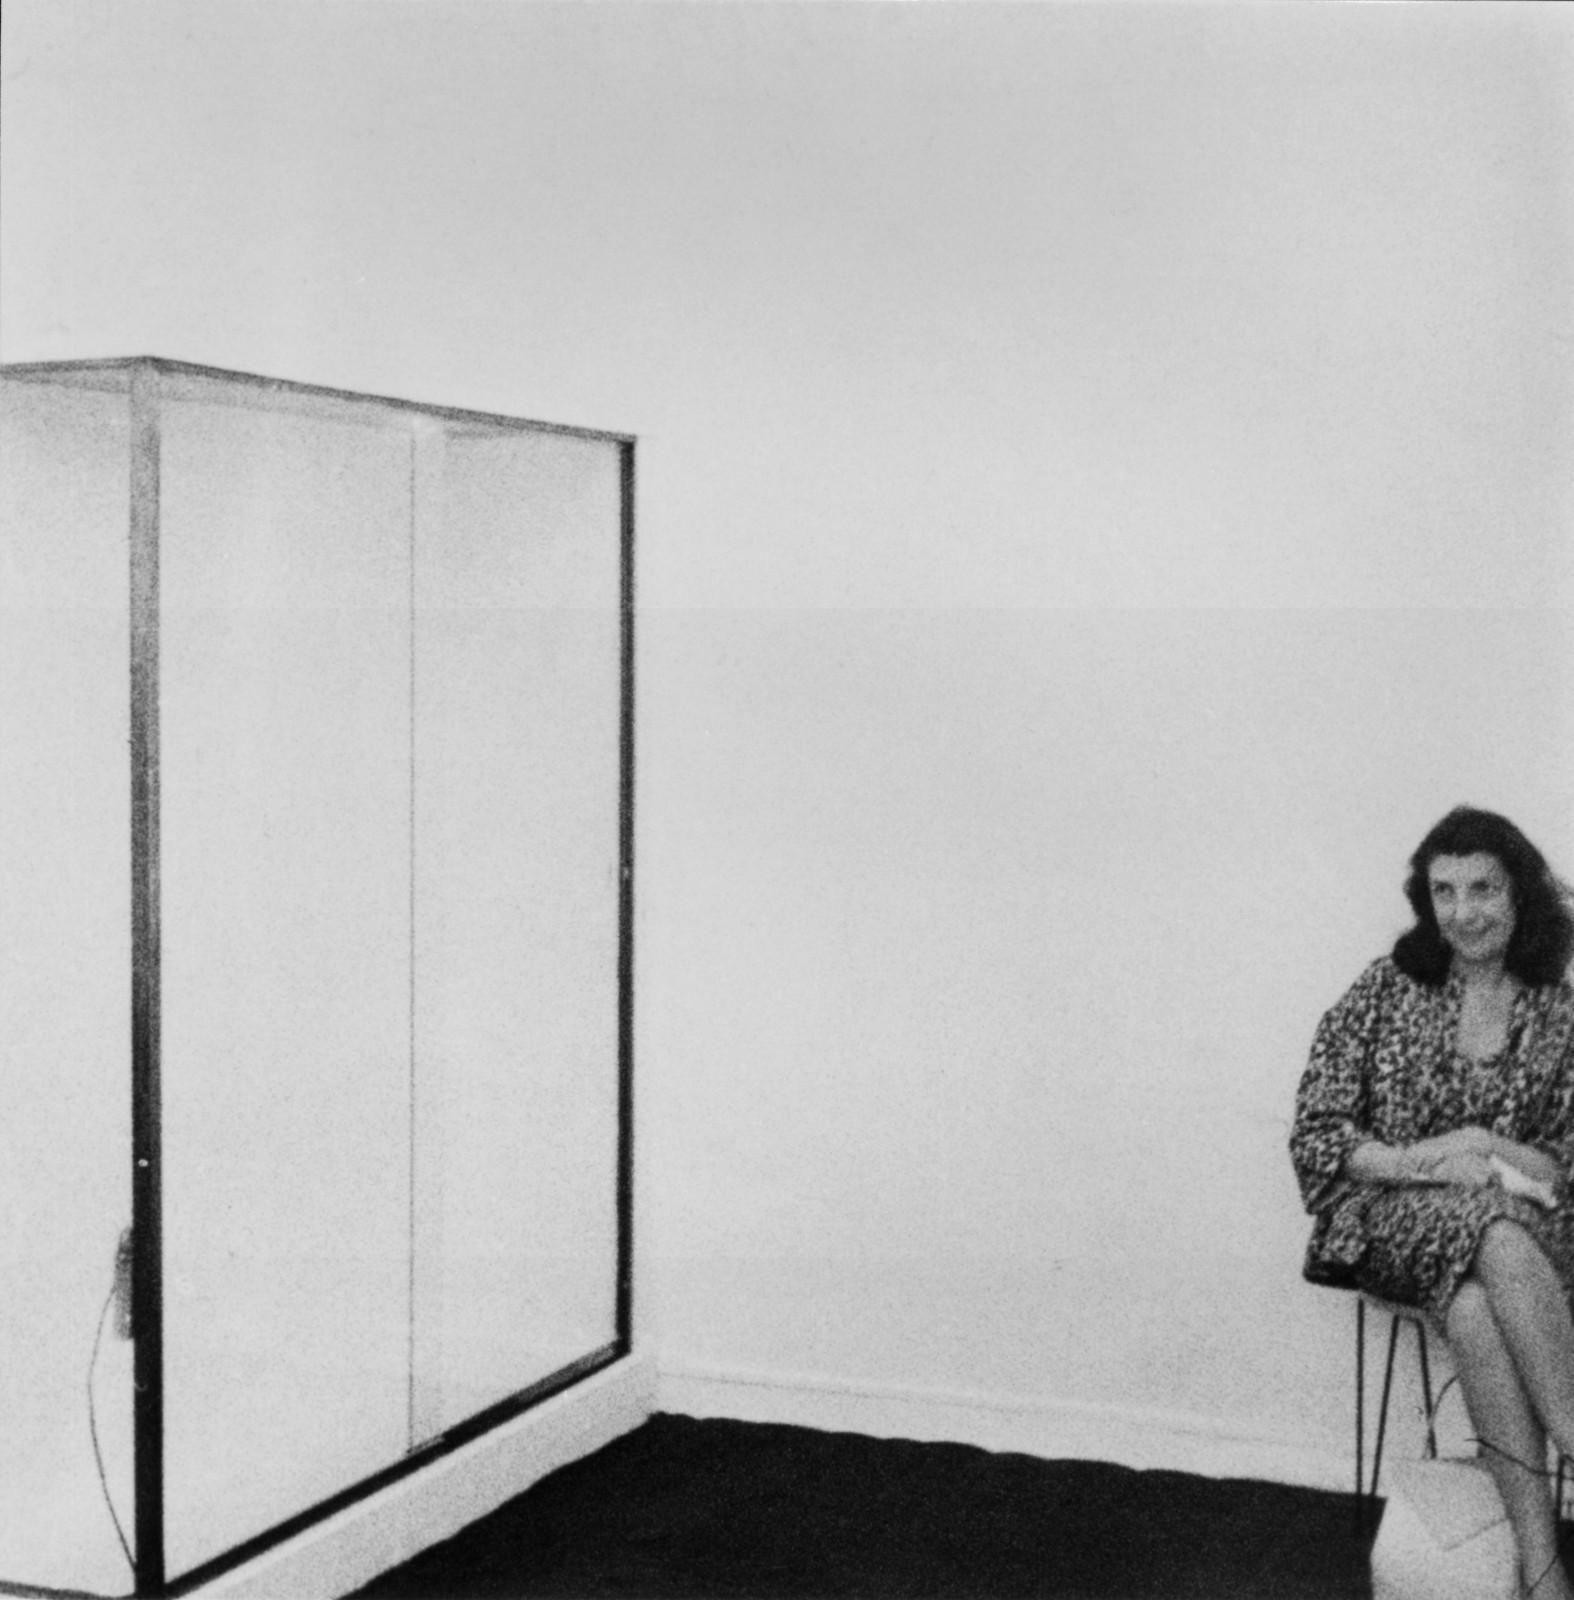 Iris Clert lors de l'exposition "Le Vide", Galerie Iris Clert, Paris, 1958